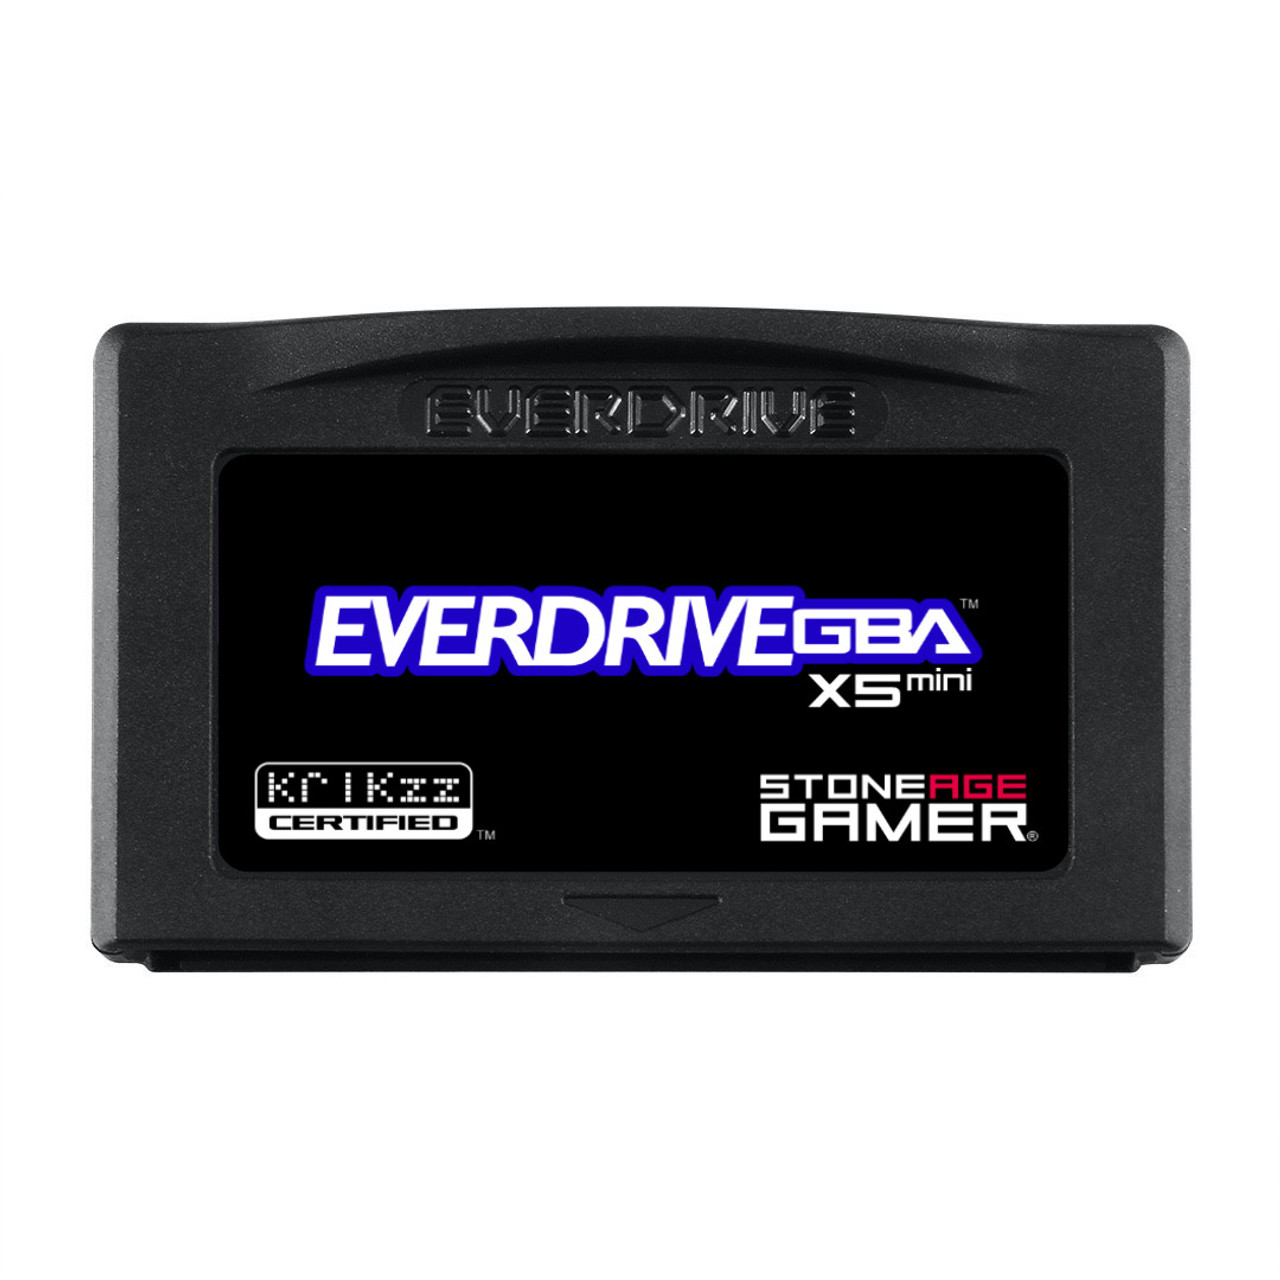 EverDrive-GBA X5 Mini (Base - Black) - Age